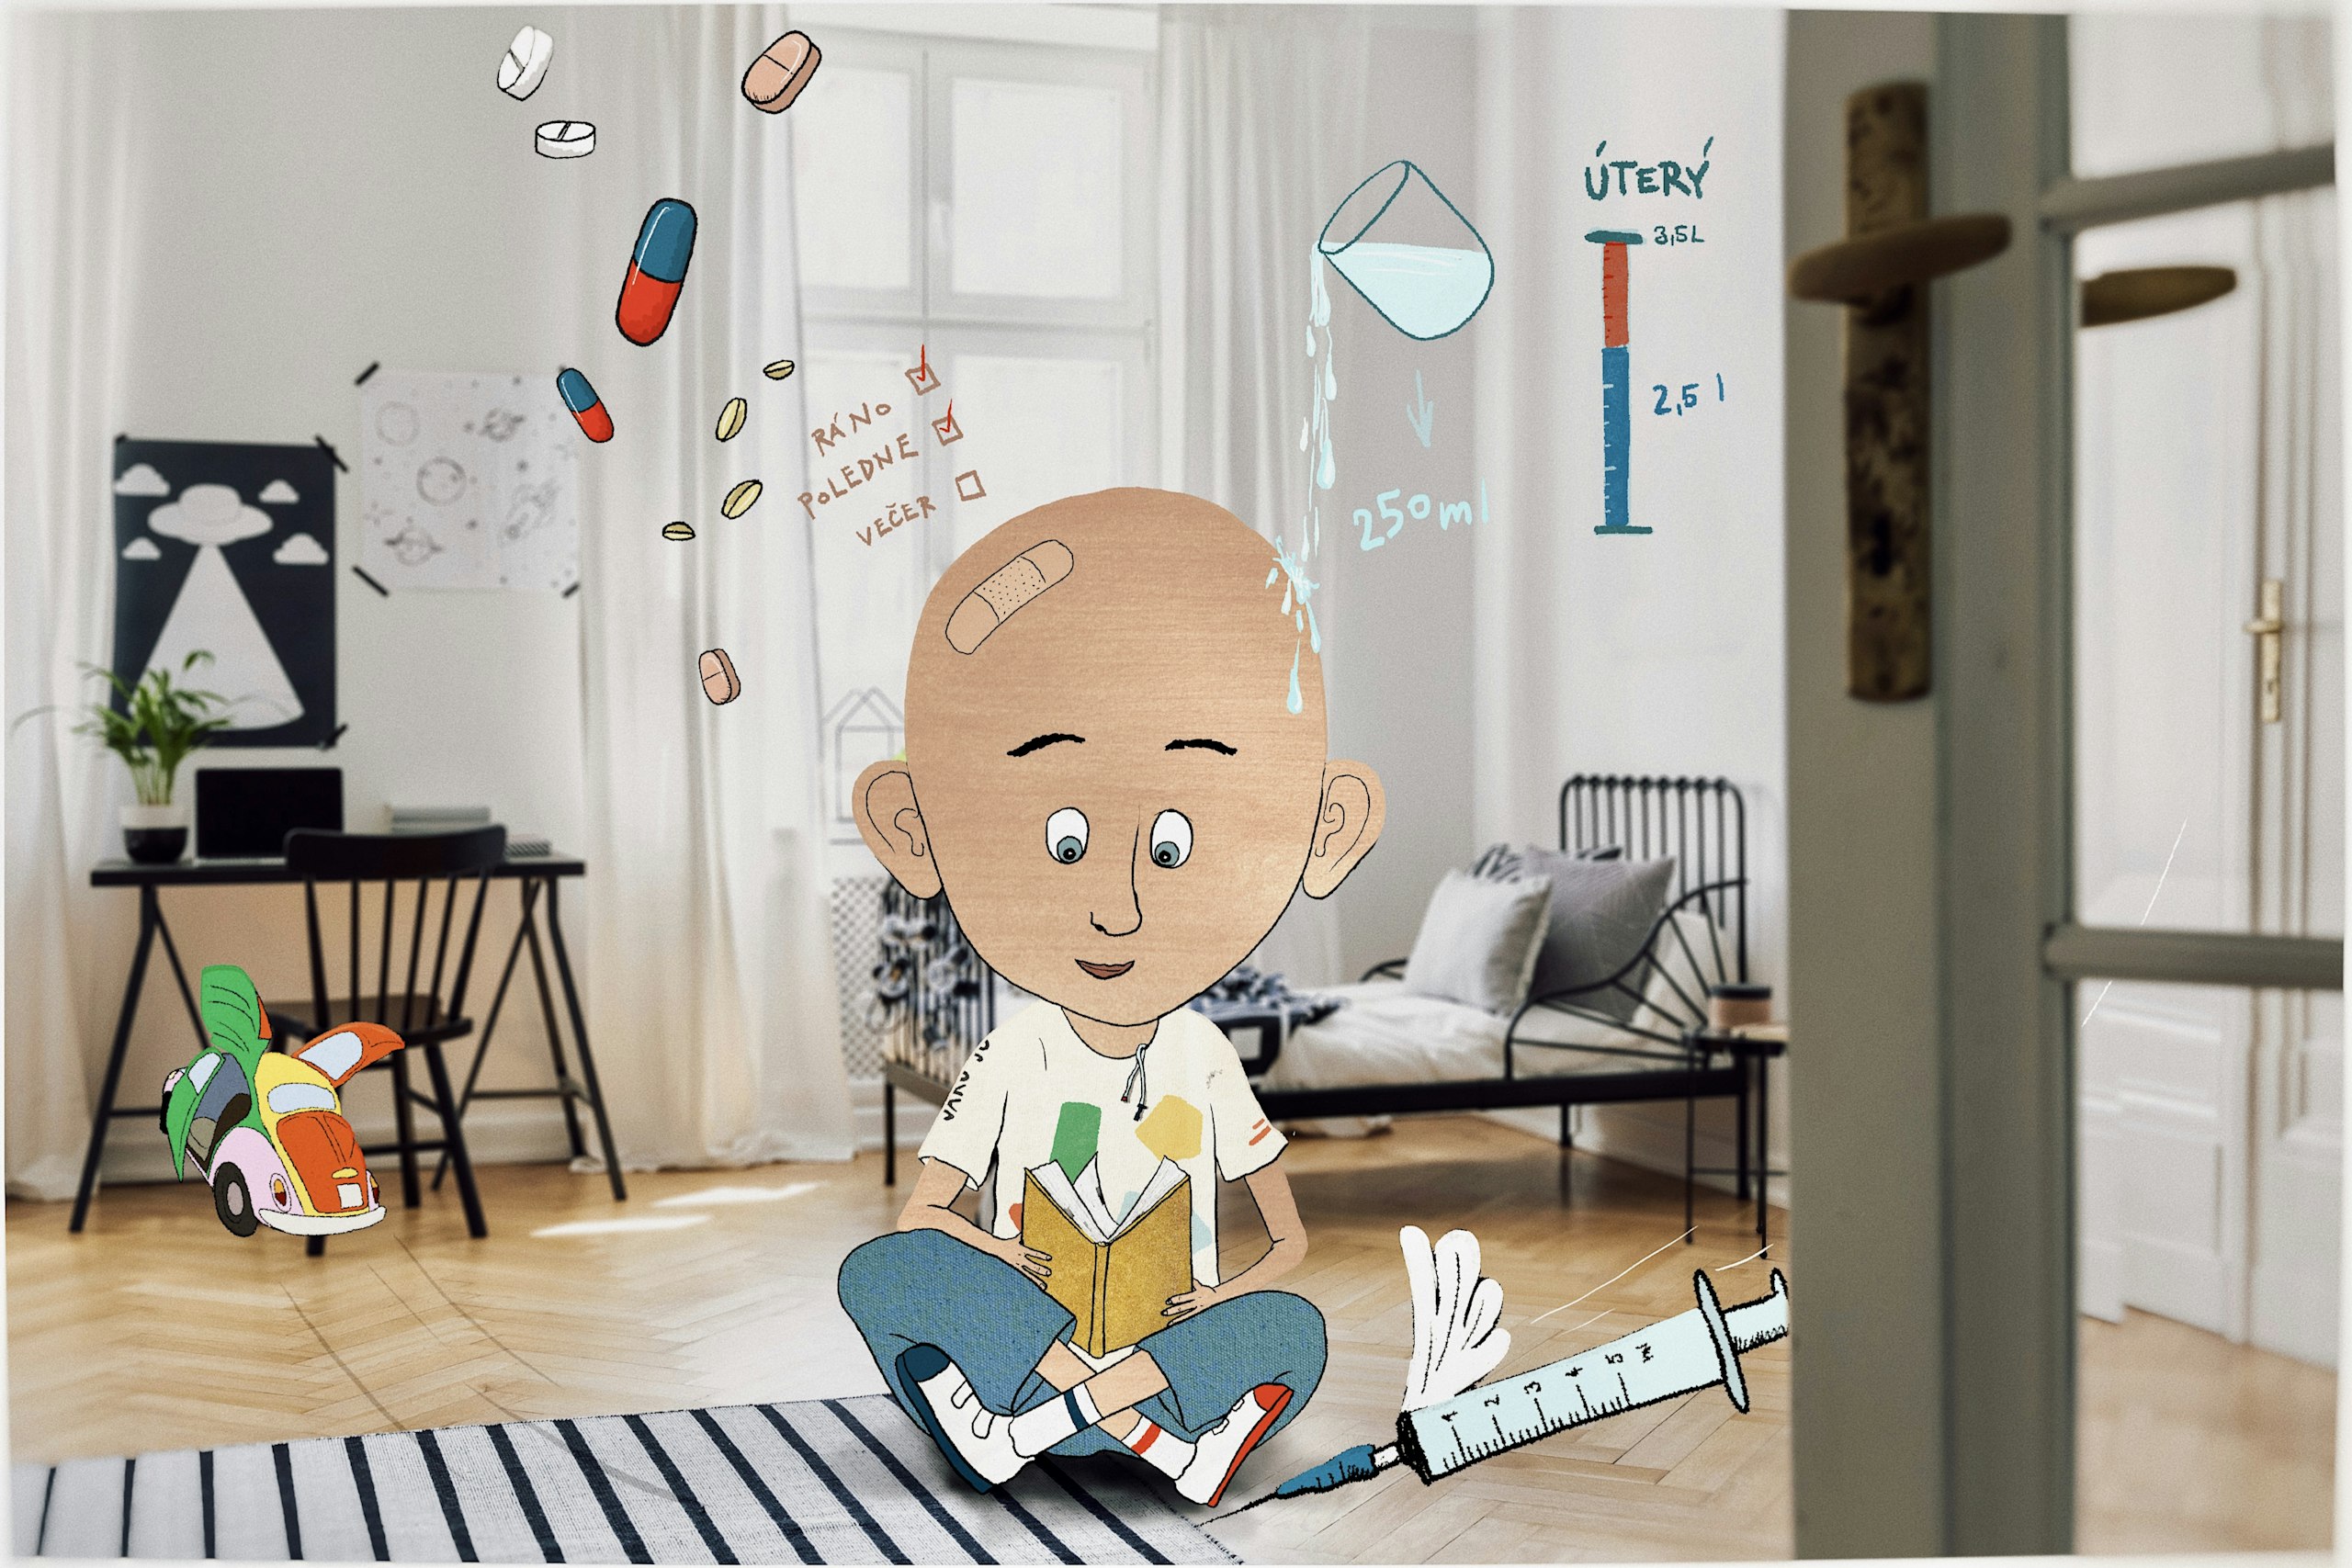 Plešouni – seriál a aplikace pro onkologicky nemocné děti